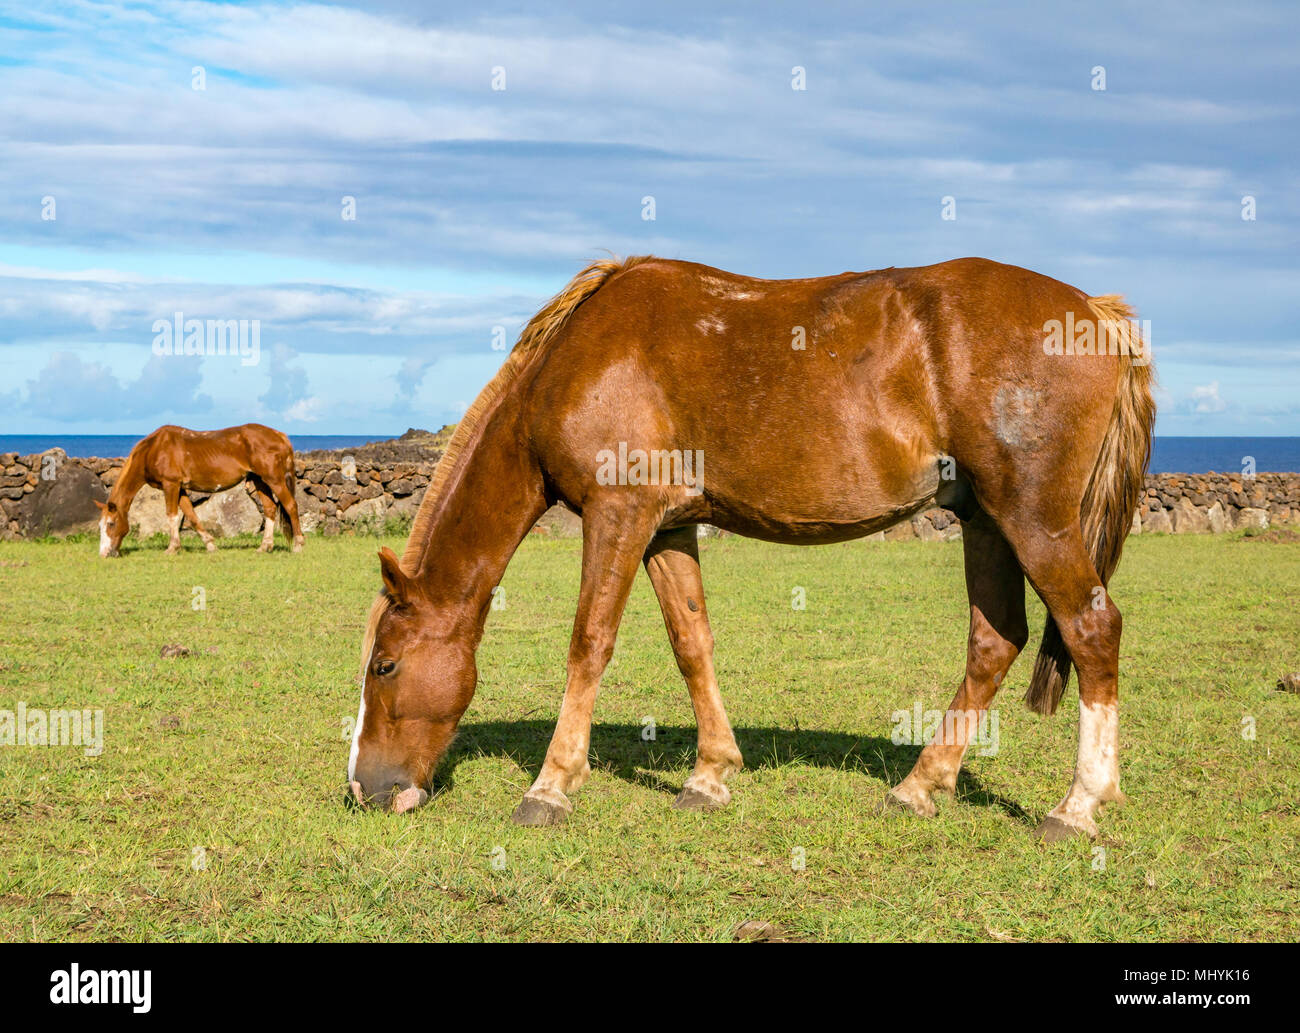 Cavalli selvaggi di pascolare su erba accanto al mare, con cielo blu, l'isola di pasqua, Cile Foto Stock